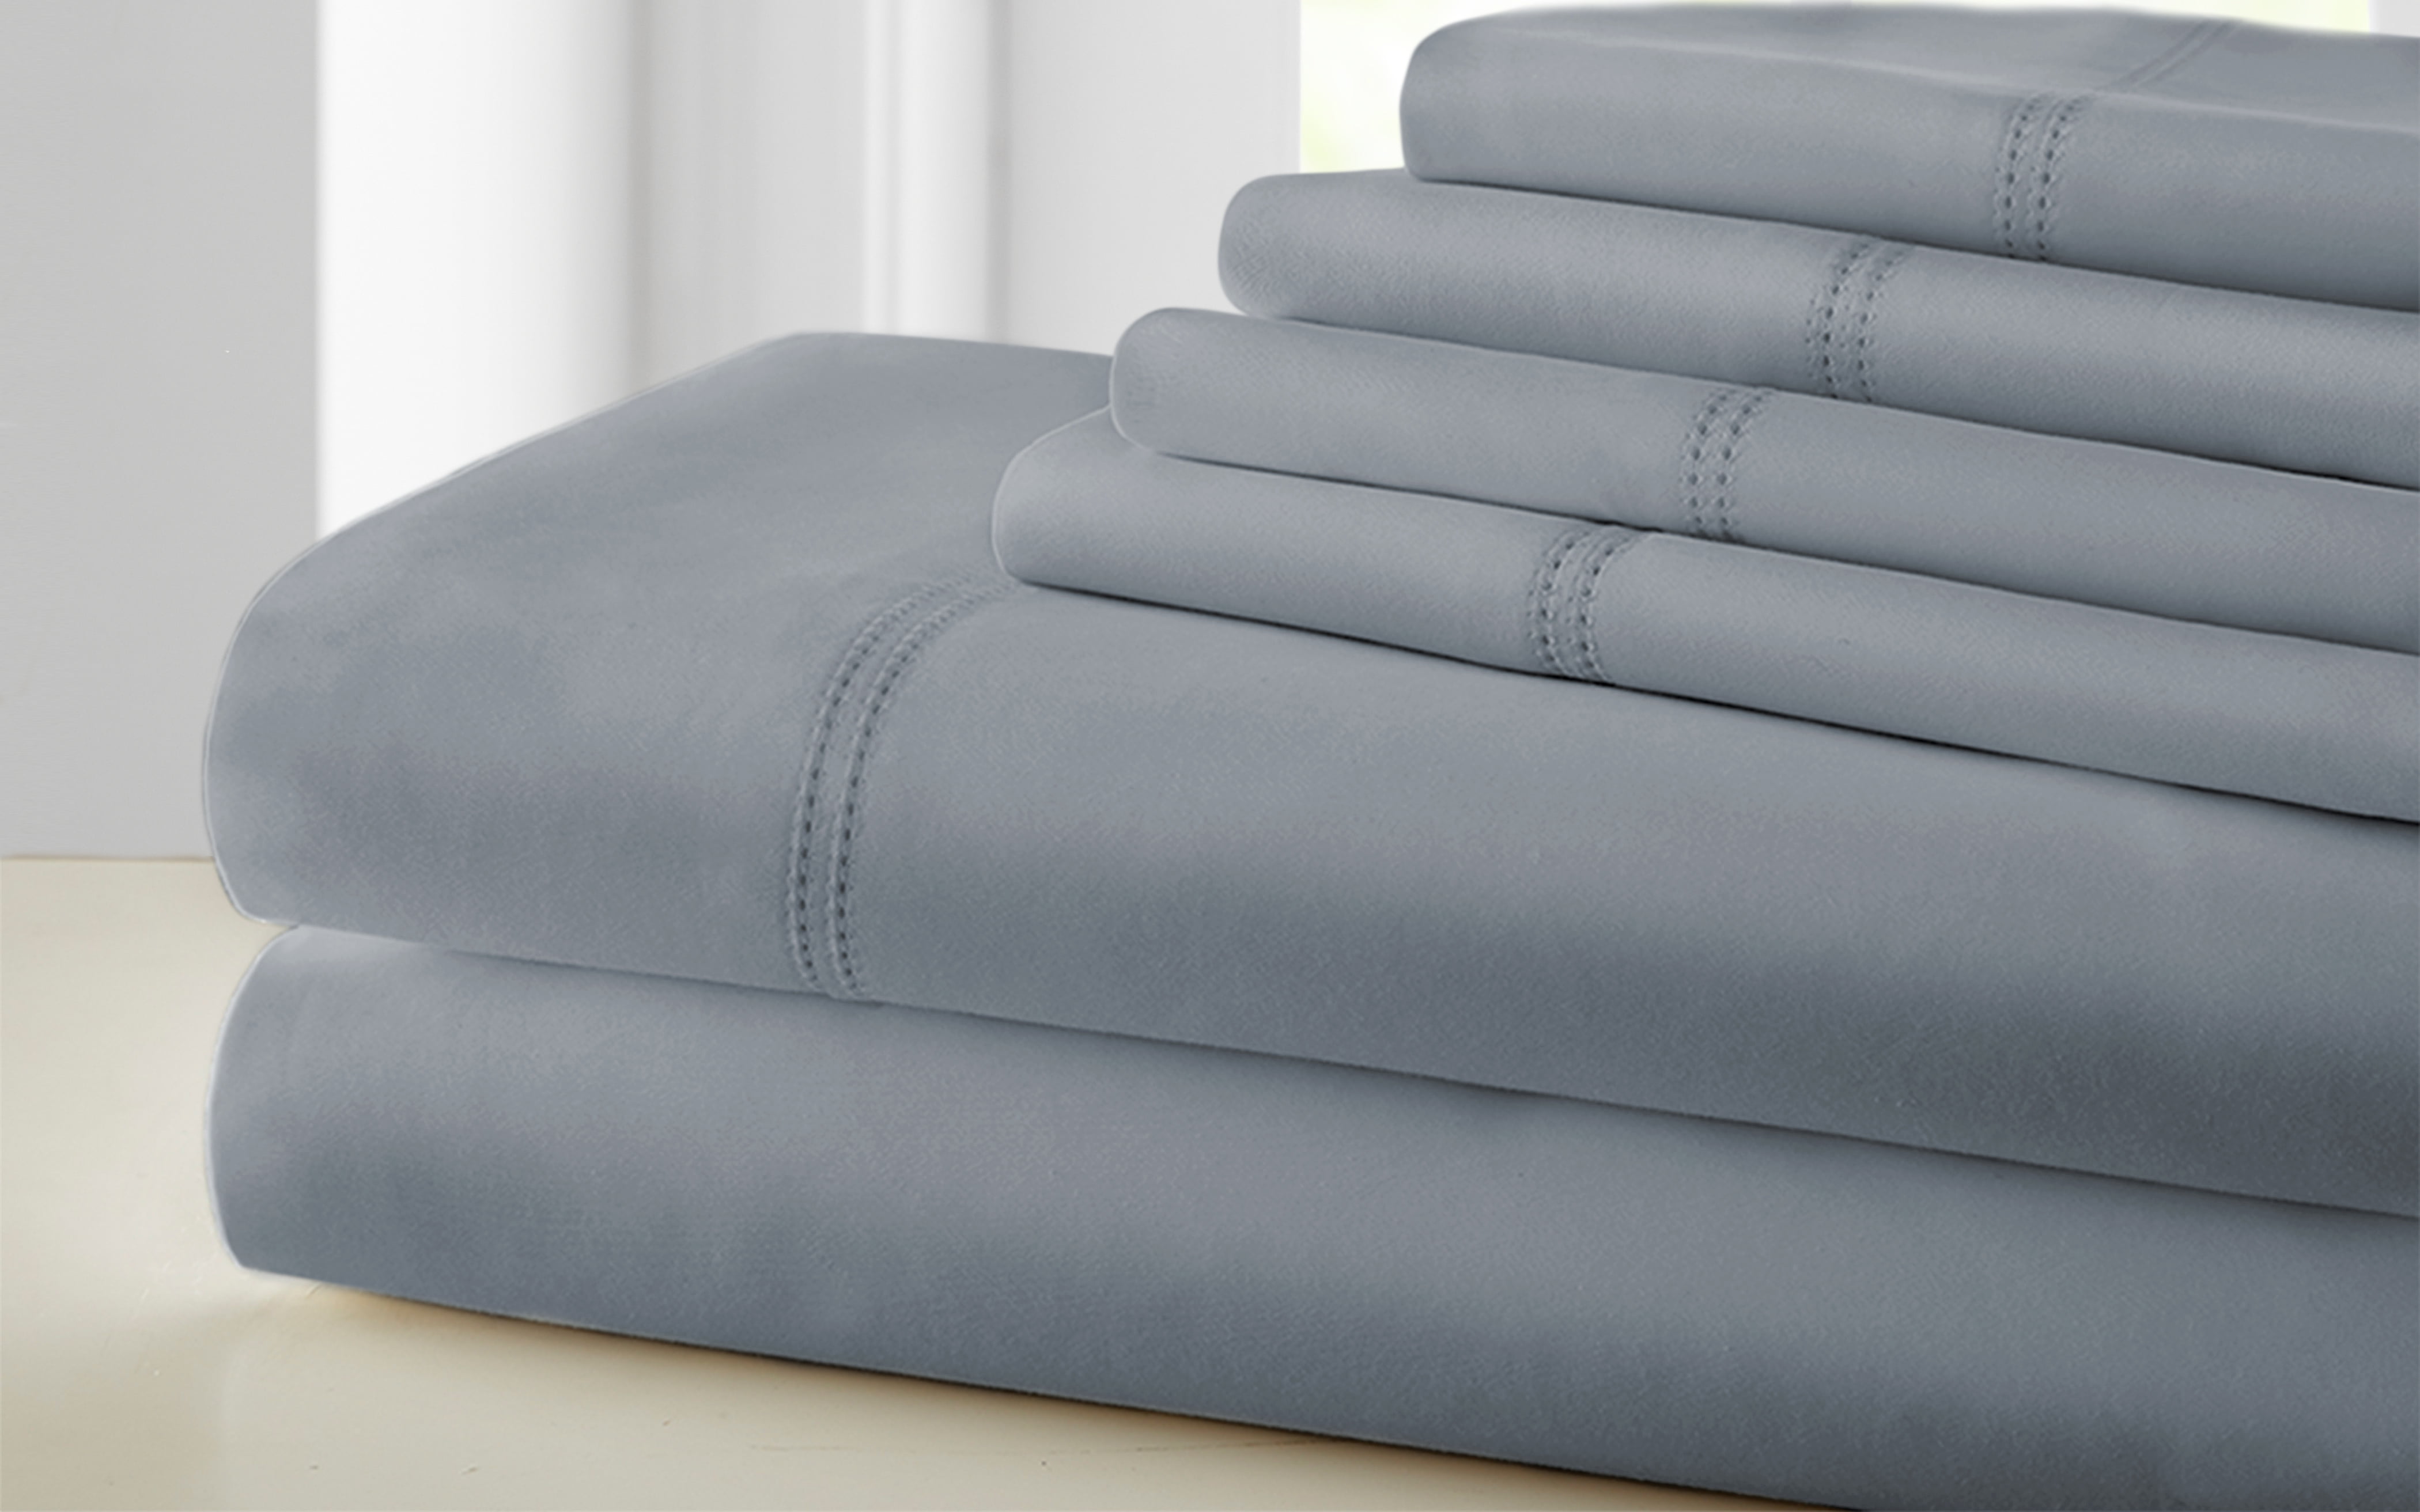 cotton queen sheet set for 14 inch mattress